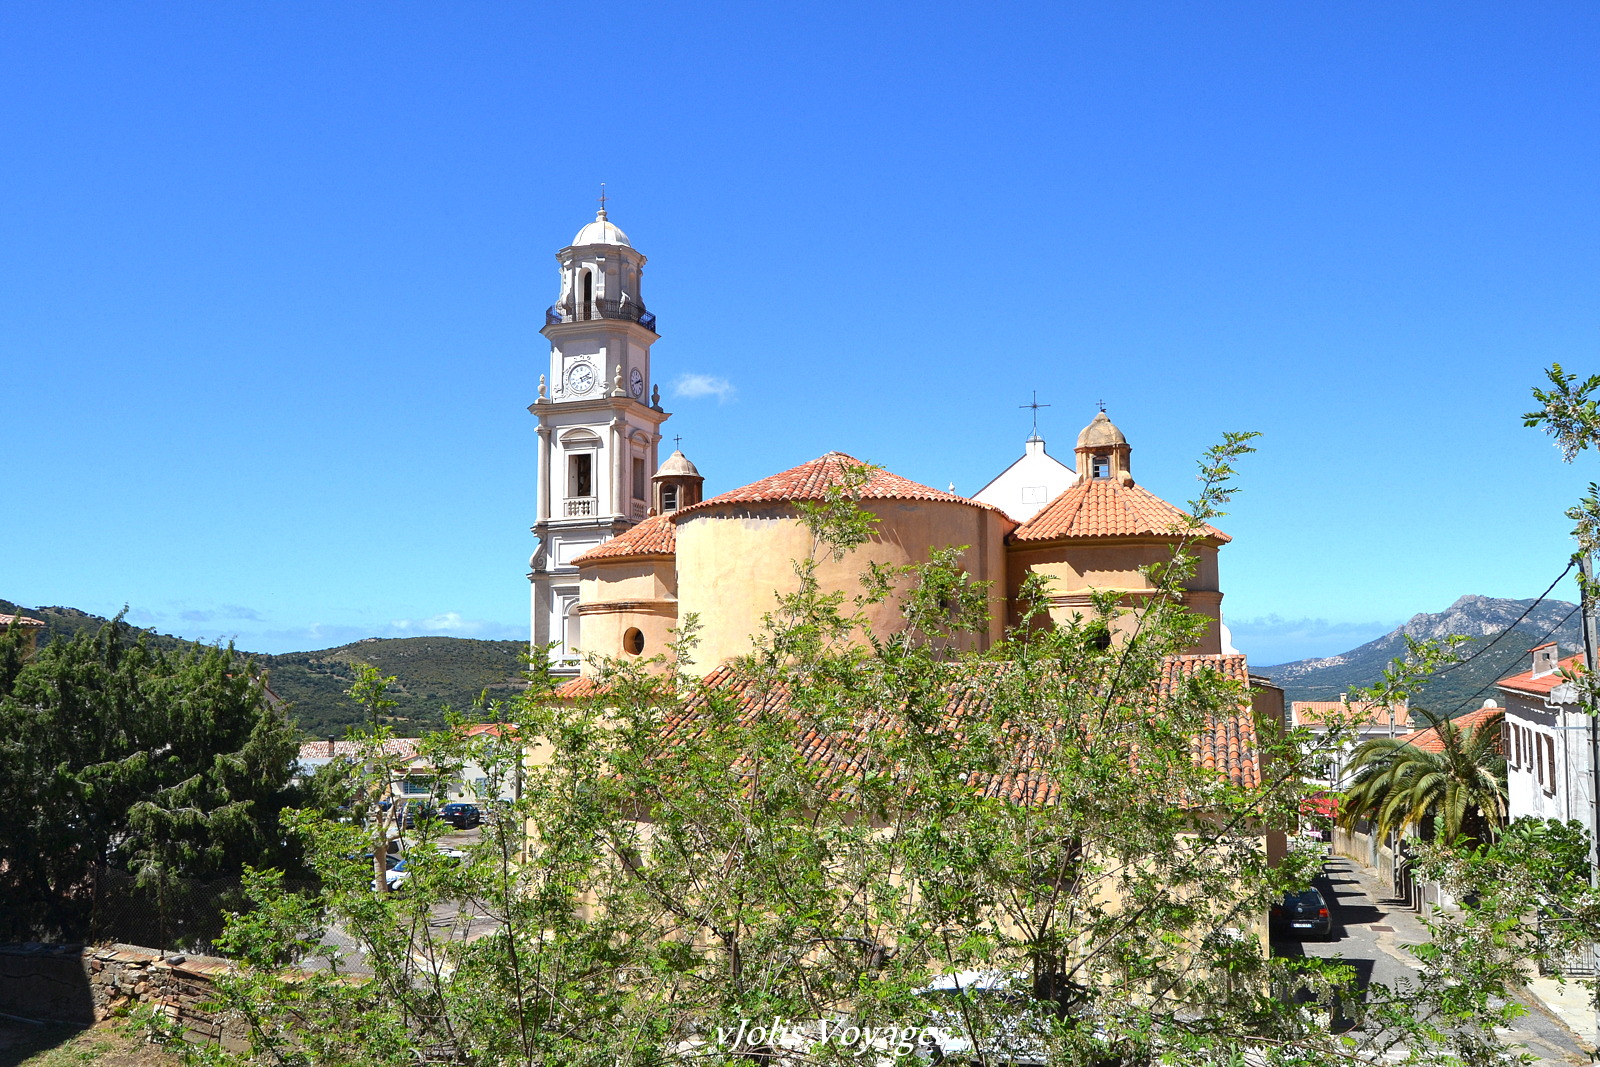 Circuit des villages perchés de Balagne (Calenzana et l'église Saint Blaise) 10 idées pour découvrir la Haute Corse #Corse #Plage #France #Voyage